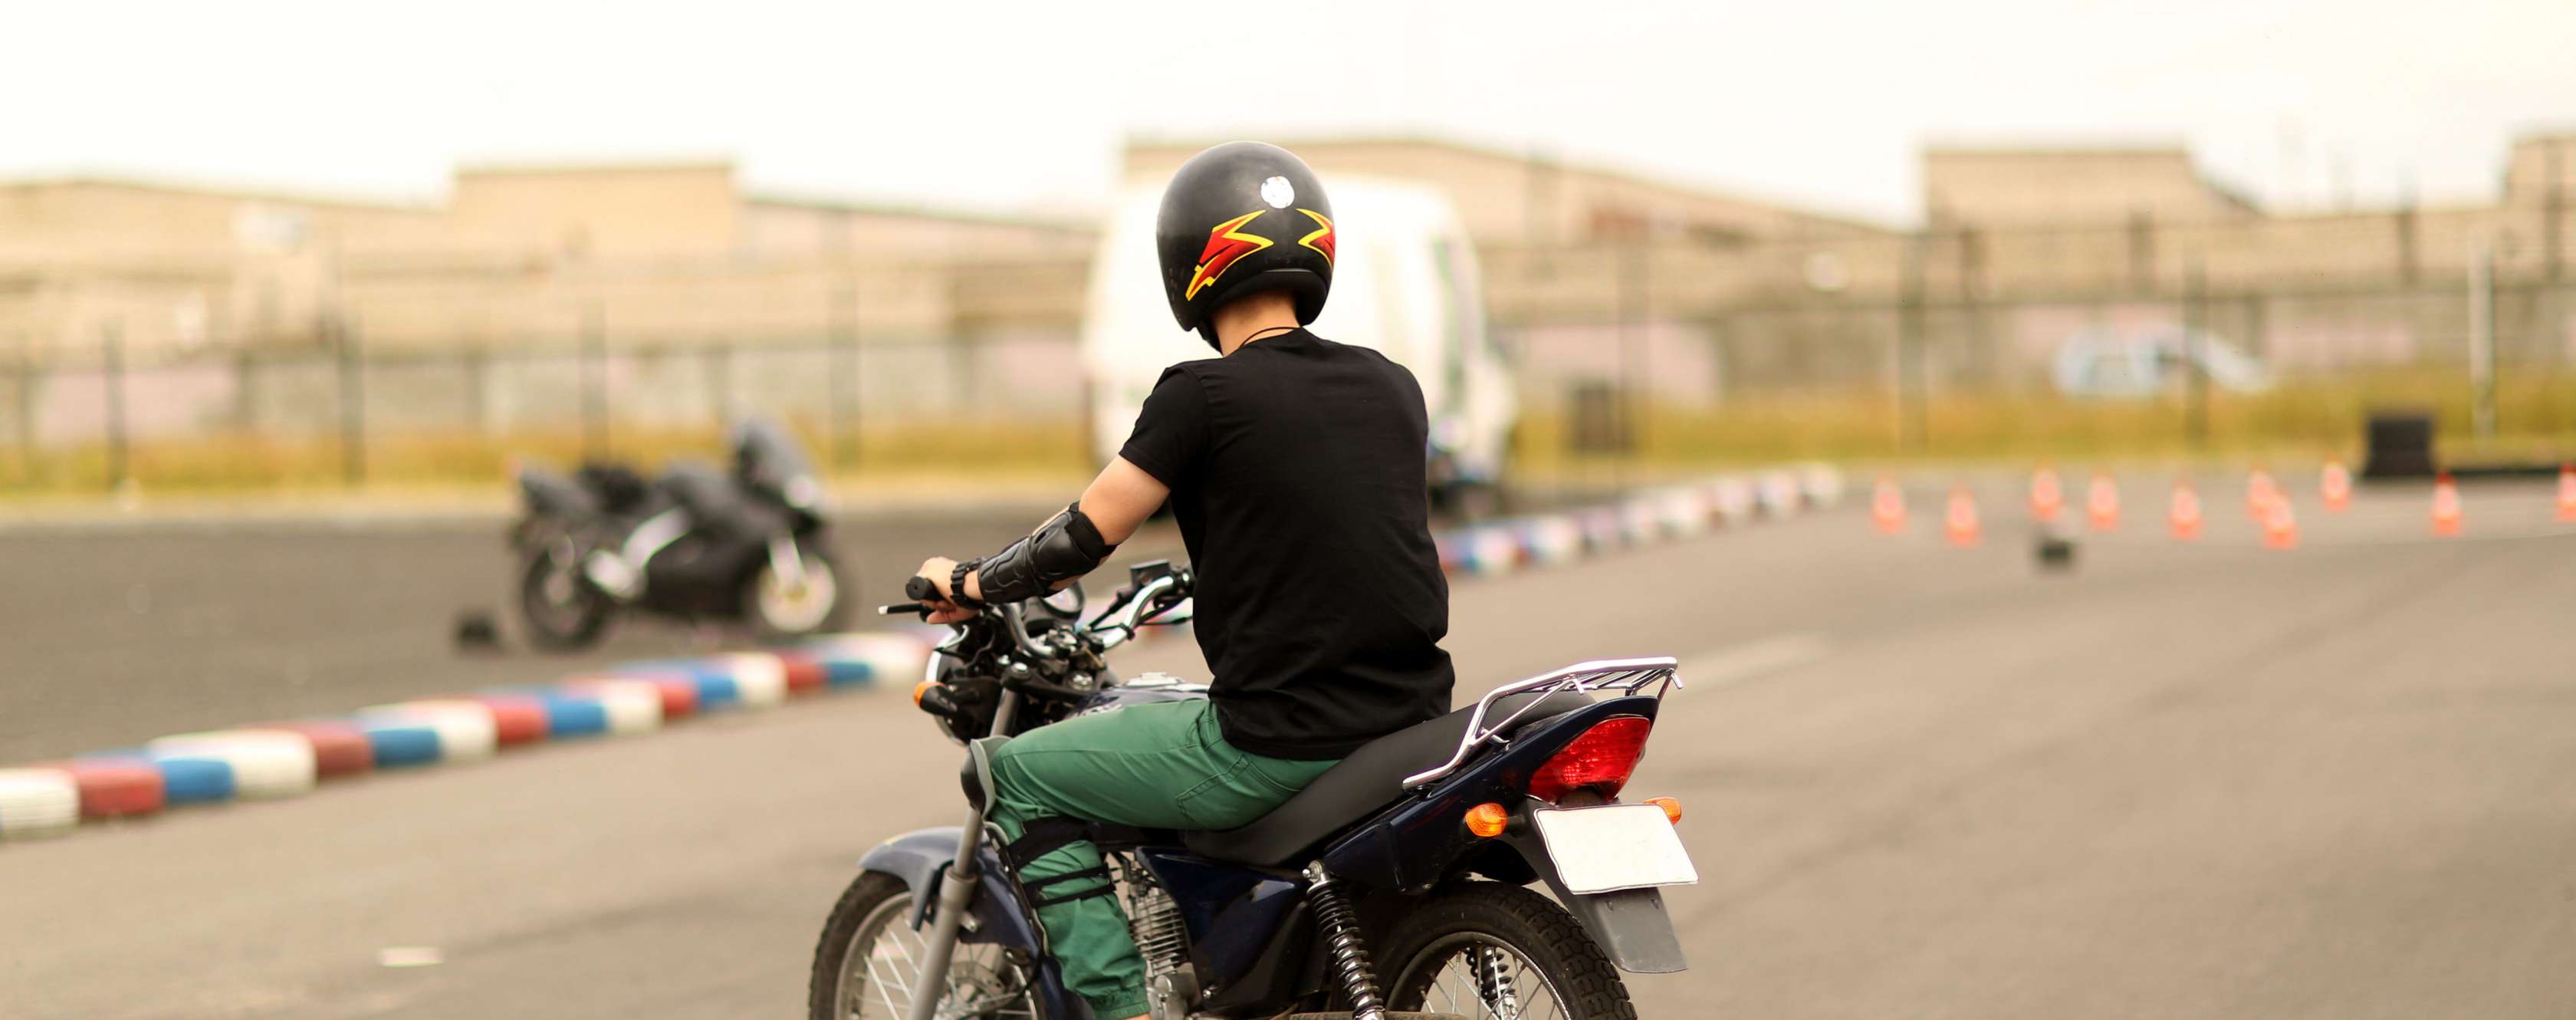 Motorradfahrer mit Helm fährt auf Übungsplatz einen Parkour ab